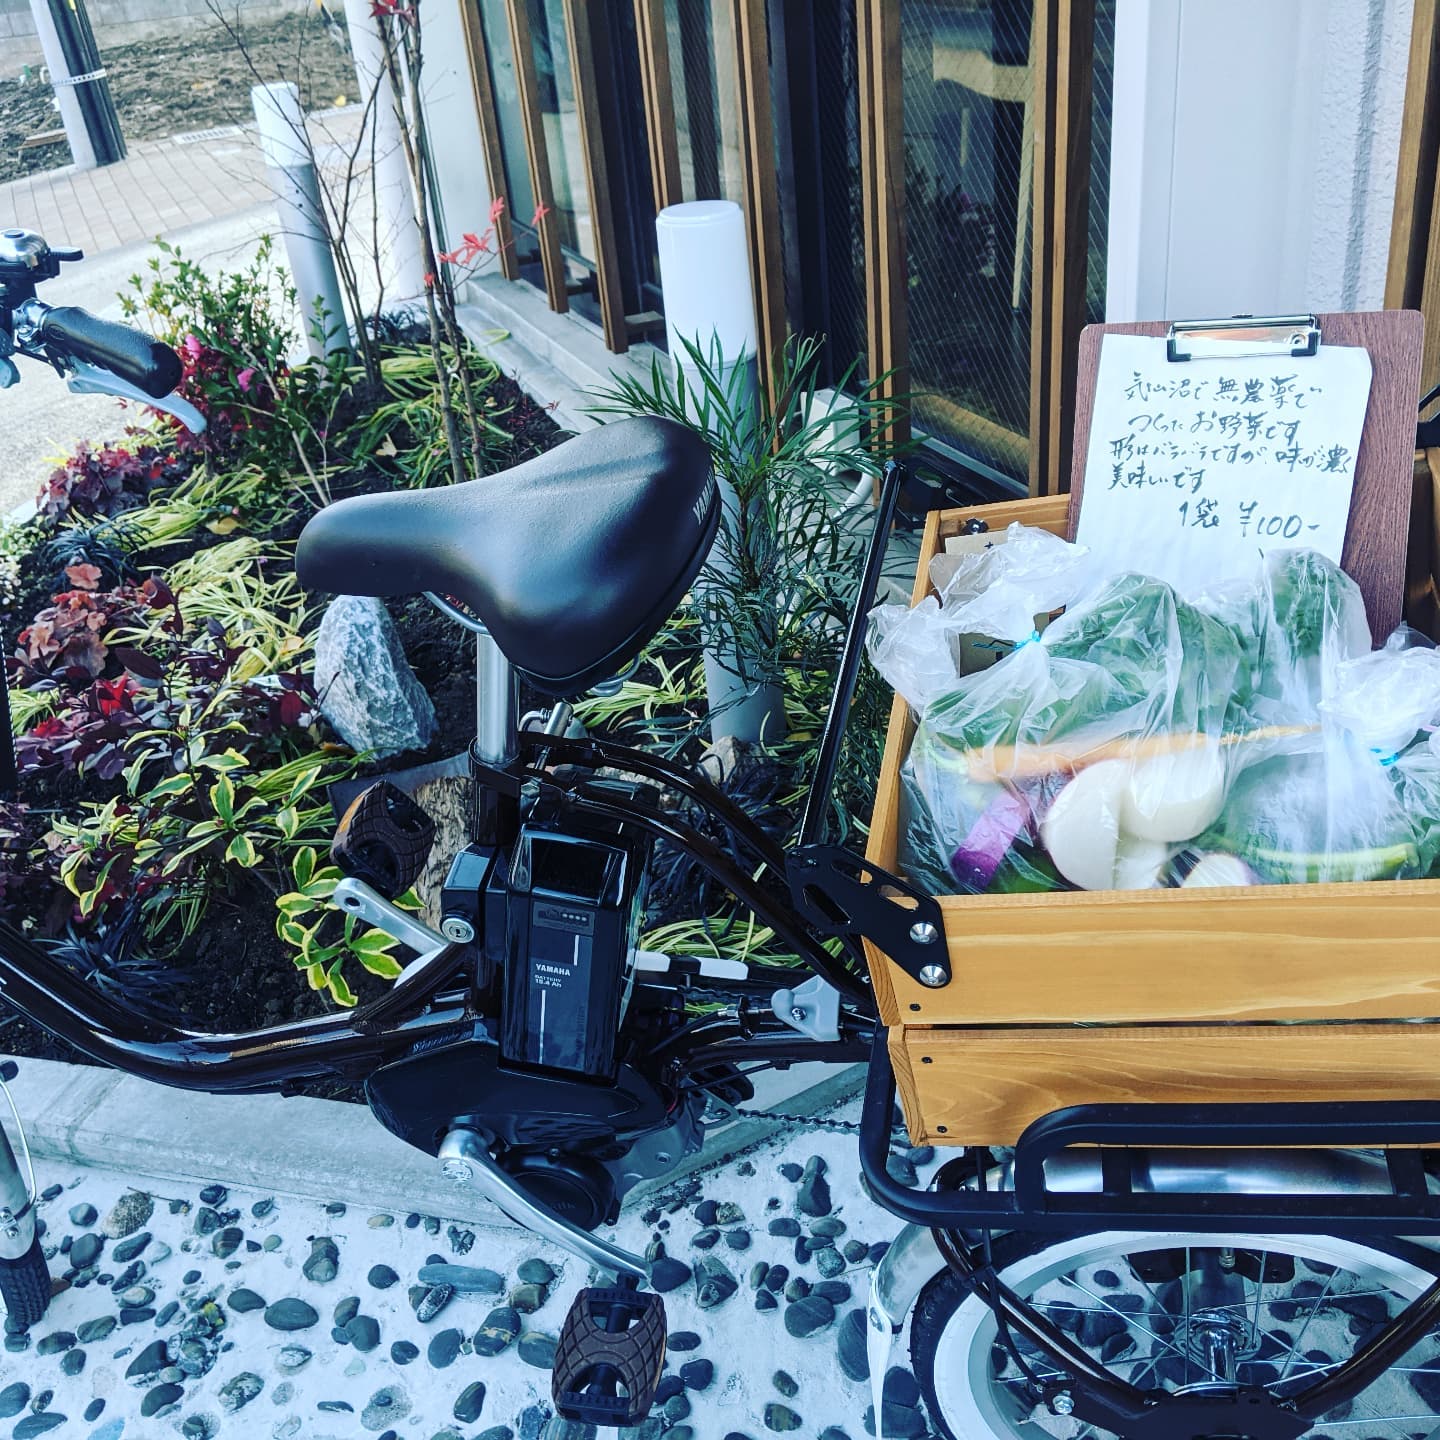 風が強くて冷たいですね…お店の前の三輪車『はんぞうくん』で先程届いた叔父さんの野菜販売中です。いろいろちょっとずつ使い切りサイズで詰めてあります。通りがかったら覗いてみてくださいね🥰 (Instagram)